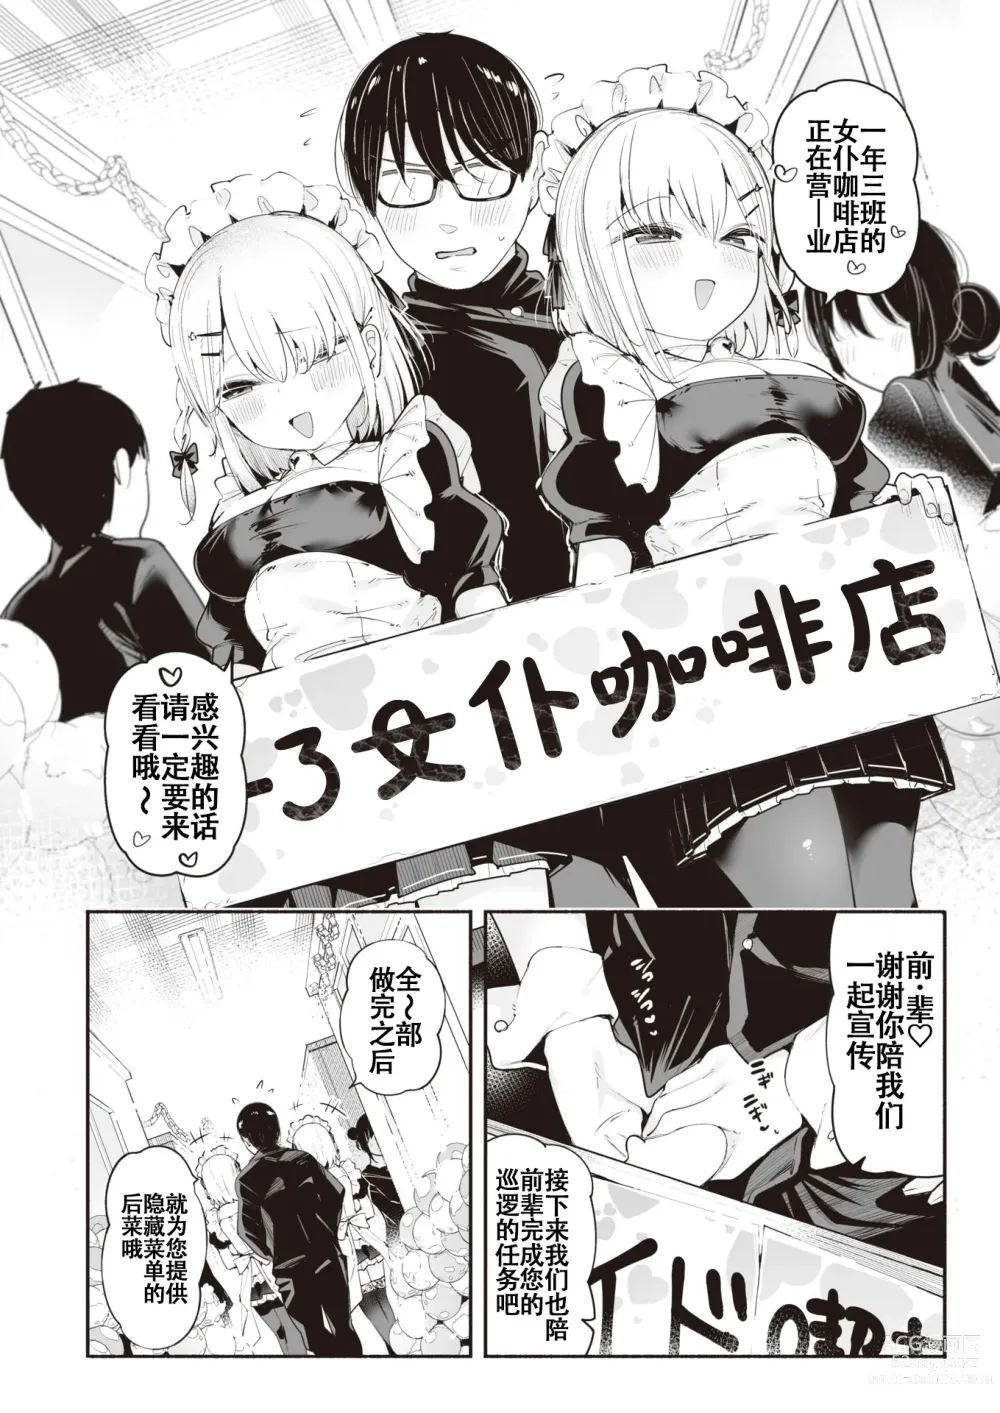 Page 6 of manga 后辈女仆之双胞胎雌小鬼